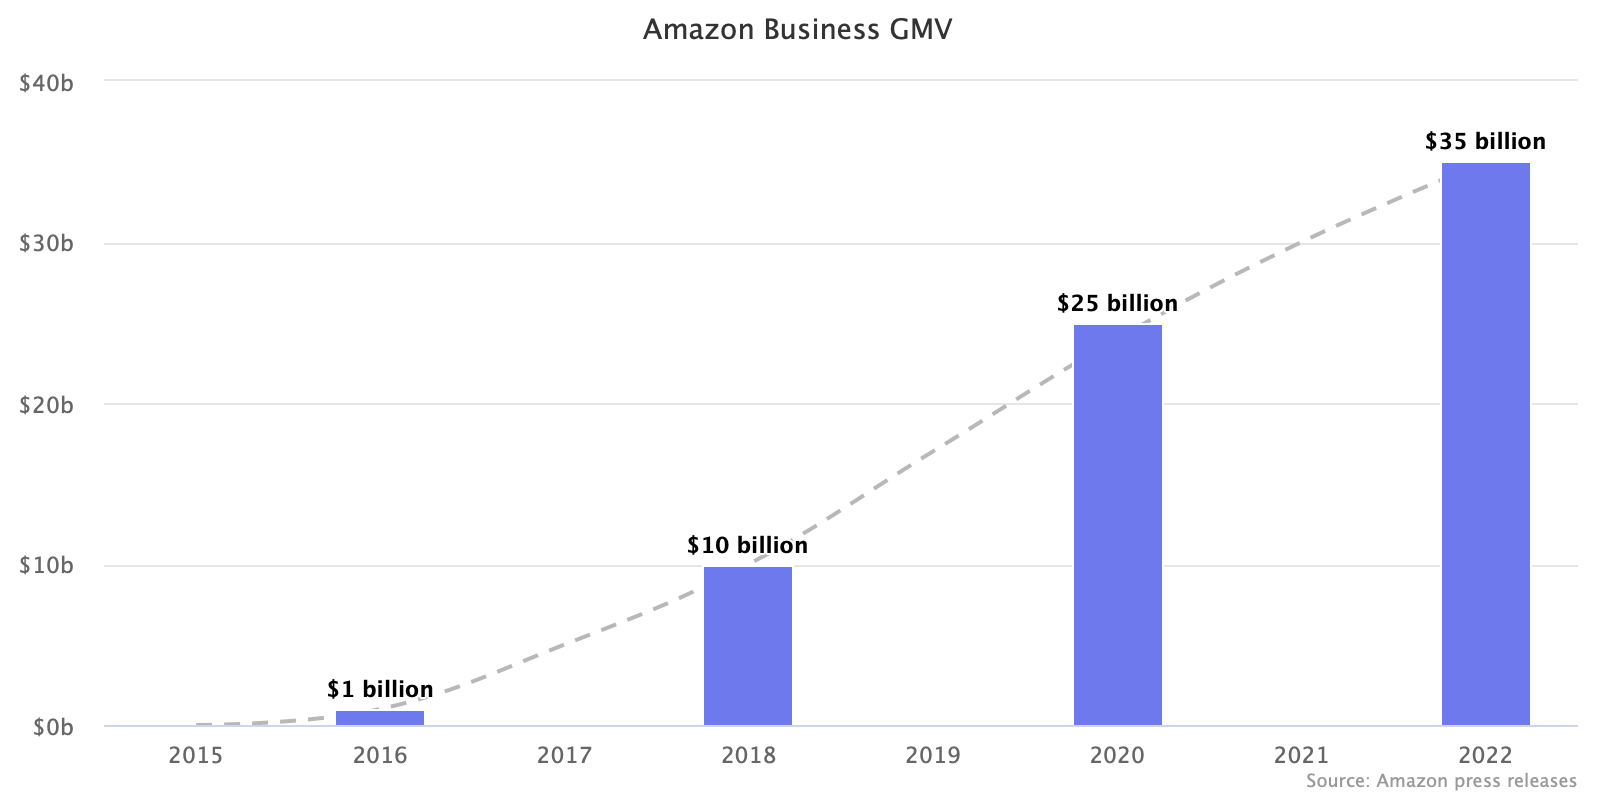 Amazon Business B2B marketplace GMV